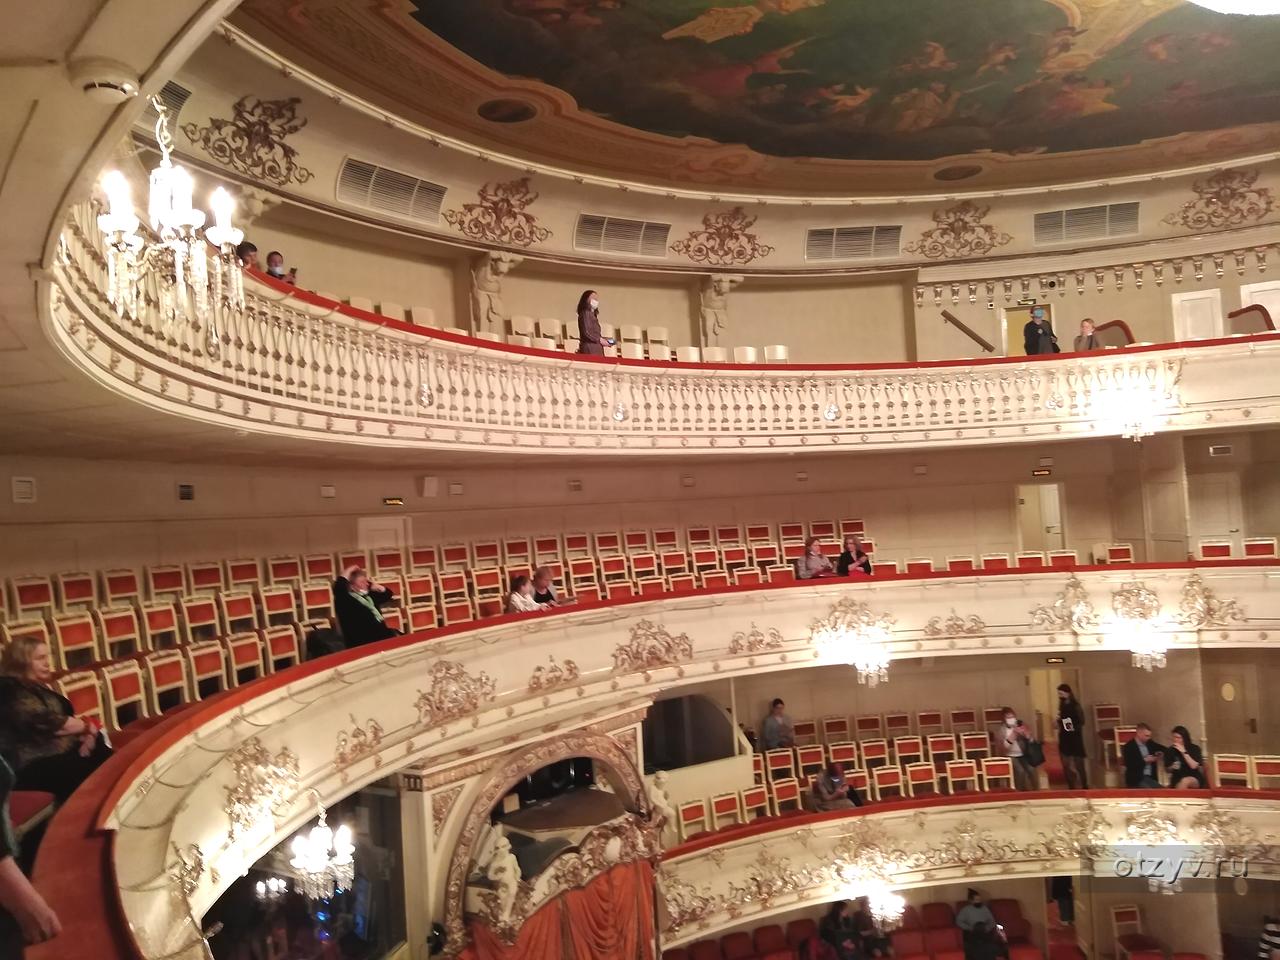 михайловский театр схема зала с местами